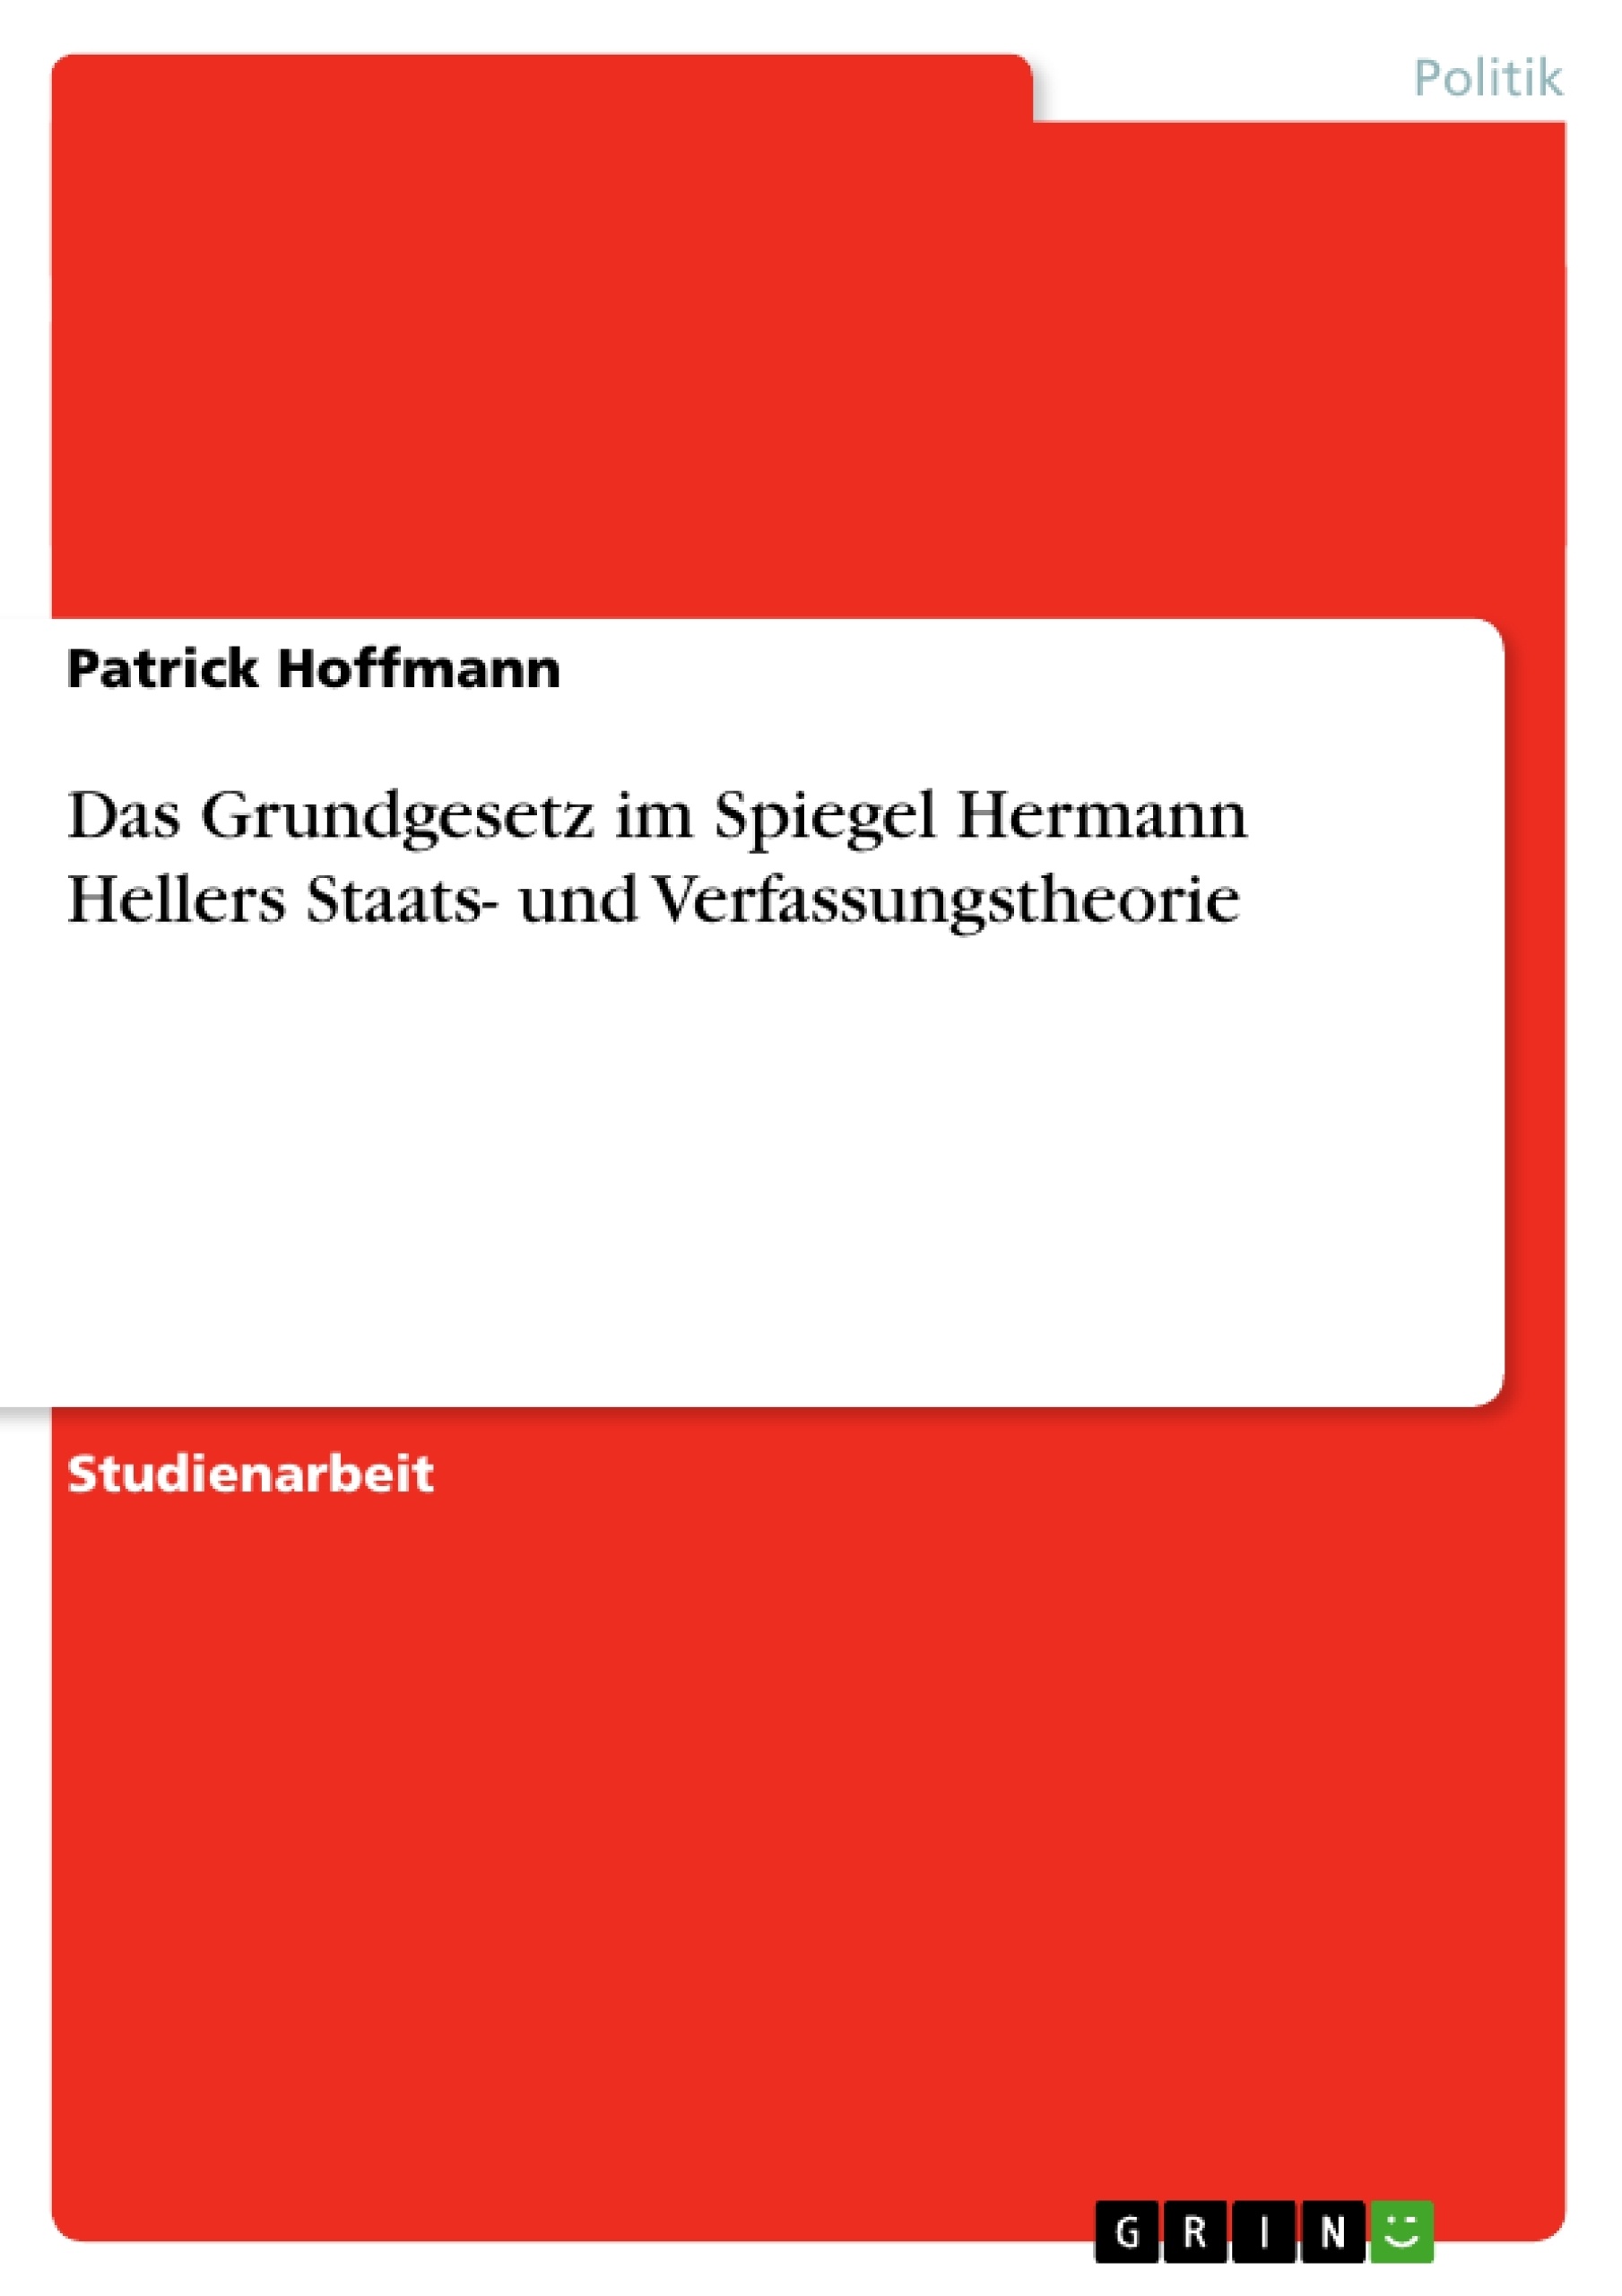 Title: Das Grundgesetz im Spiegel Hermann Hellers Staats- und Verfassungstheorie